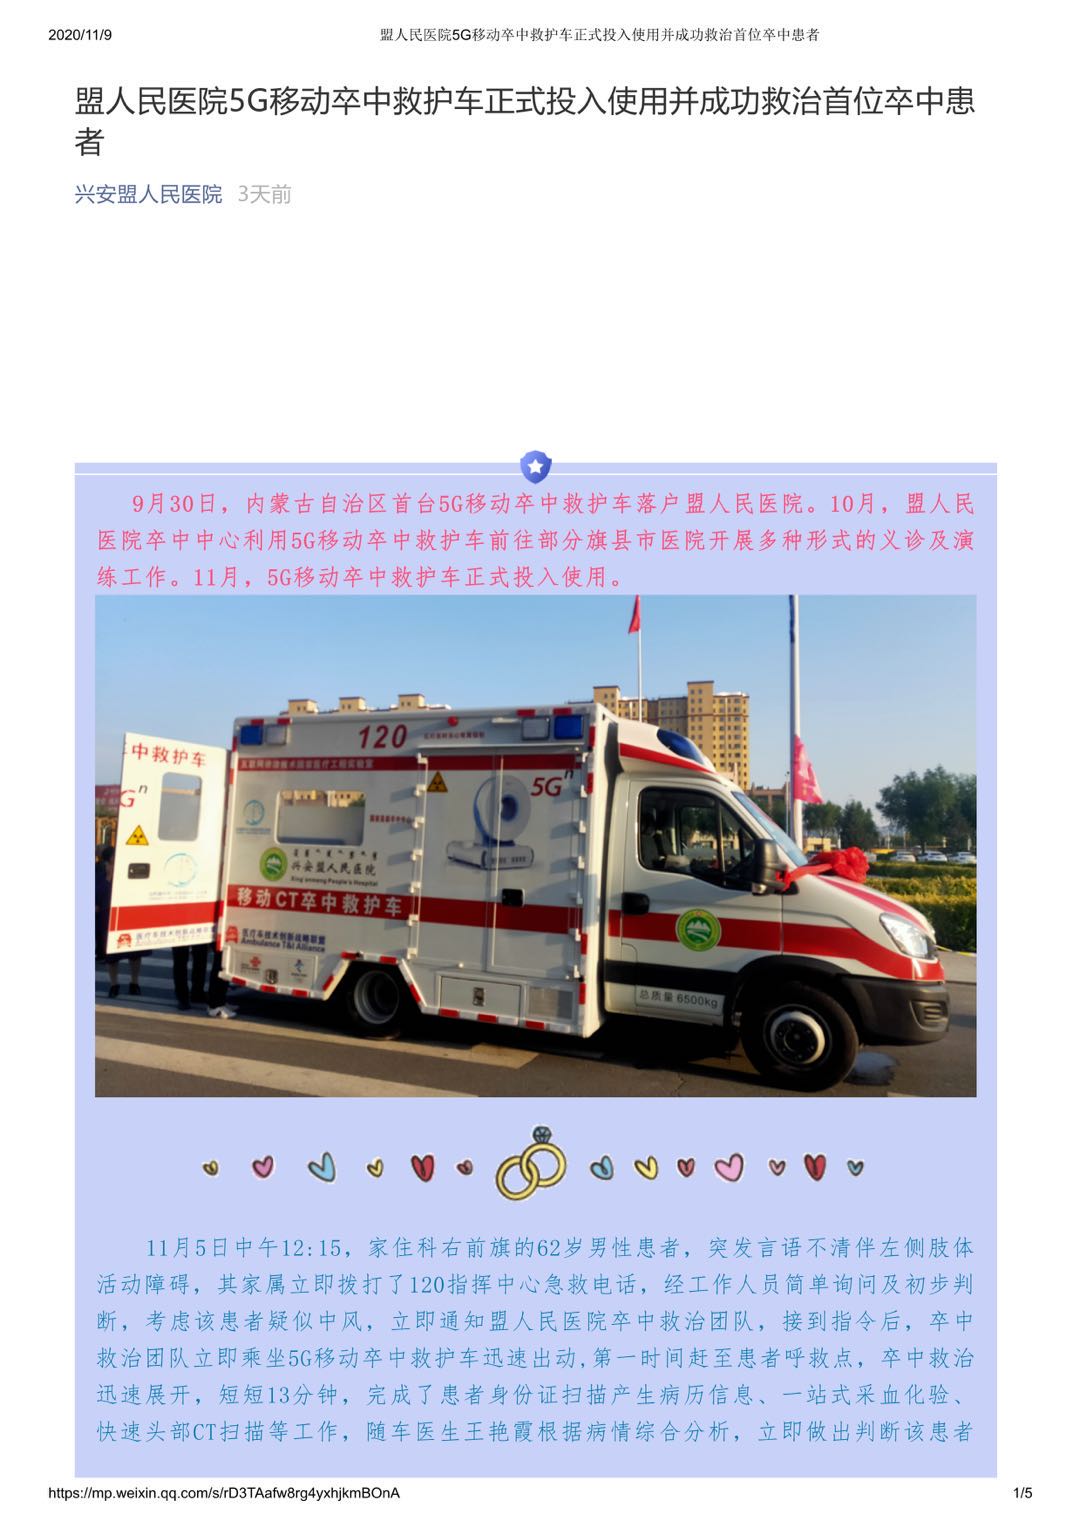 盟人民医院5G移动卒中救护车正式投入使用并成功救治首位卒患者